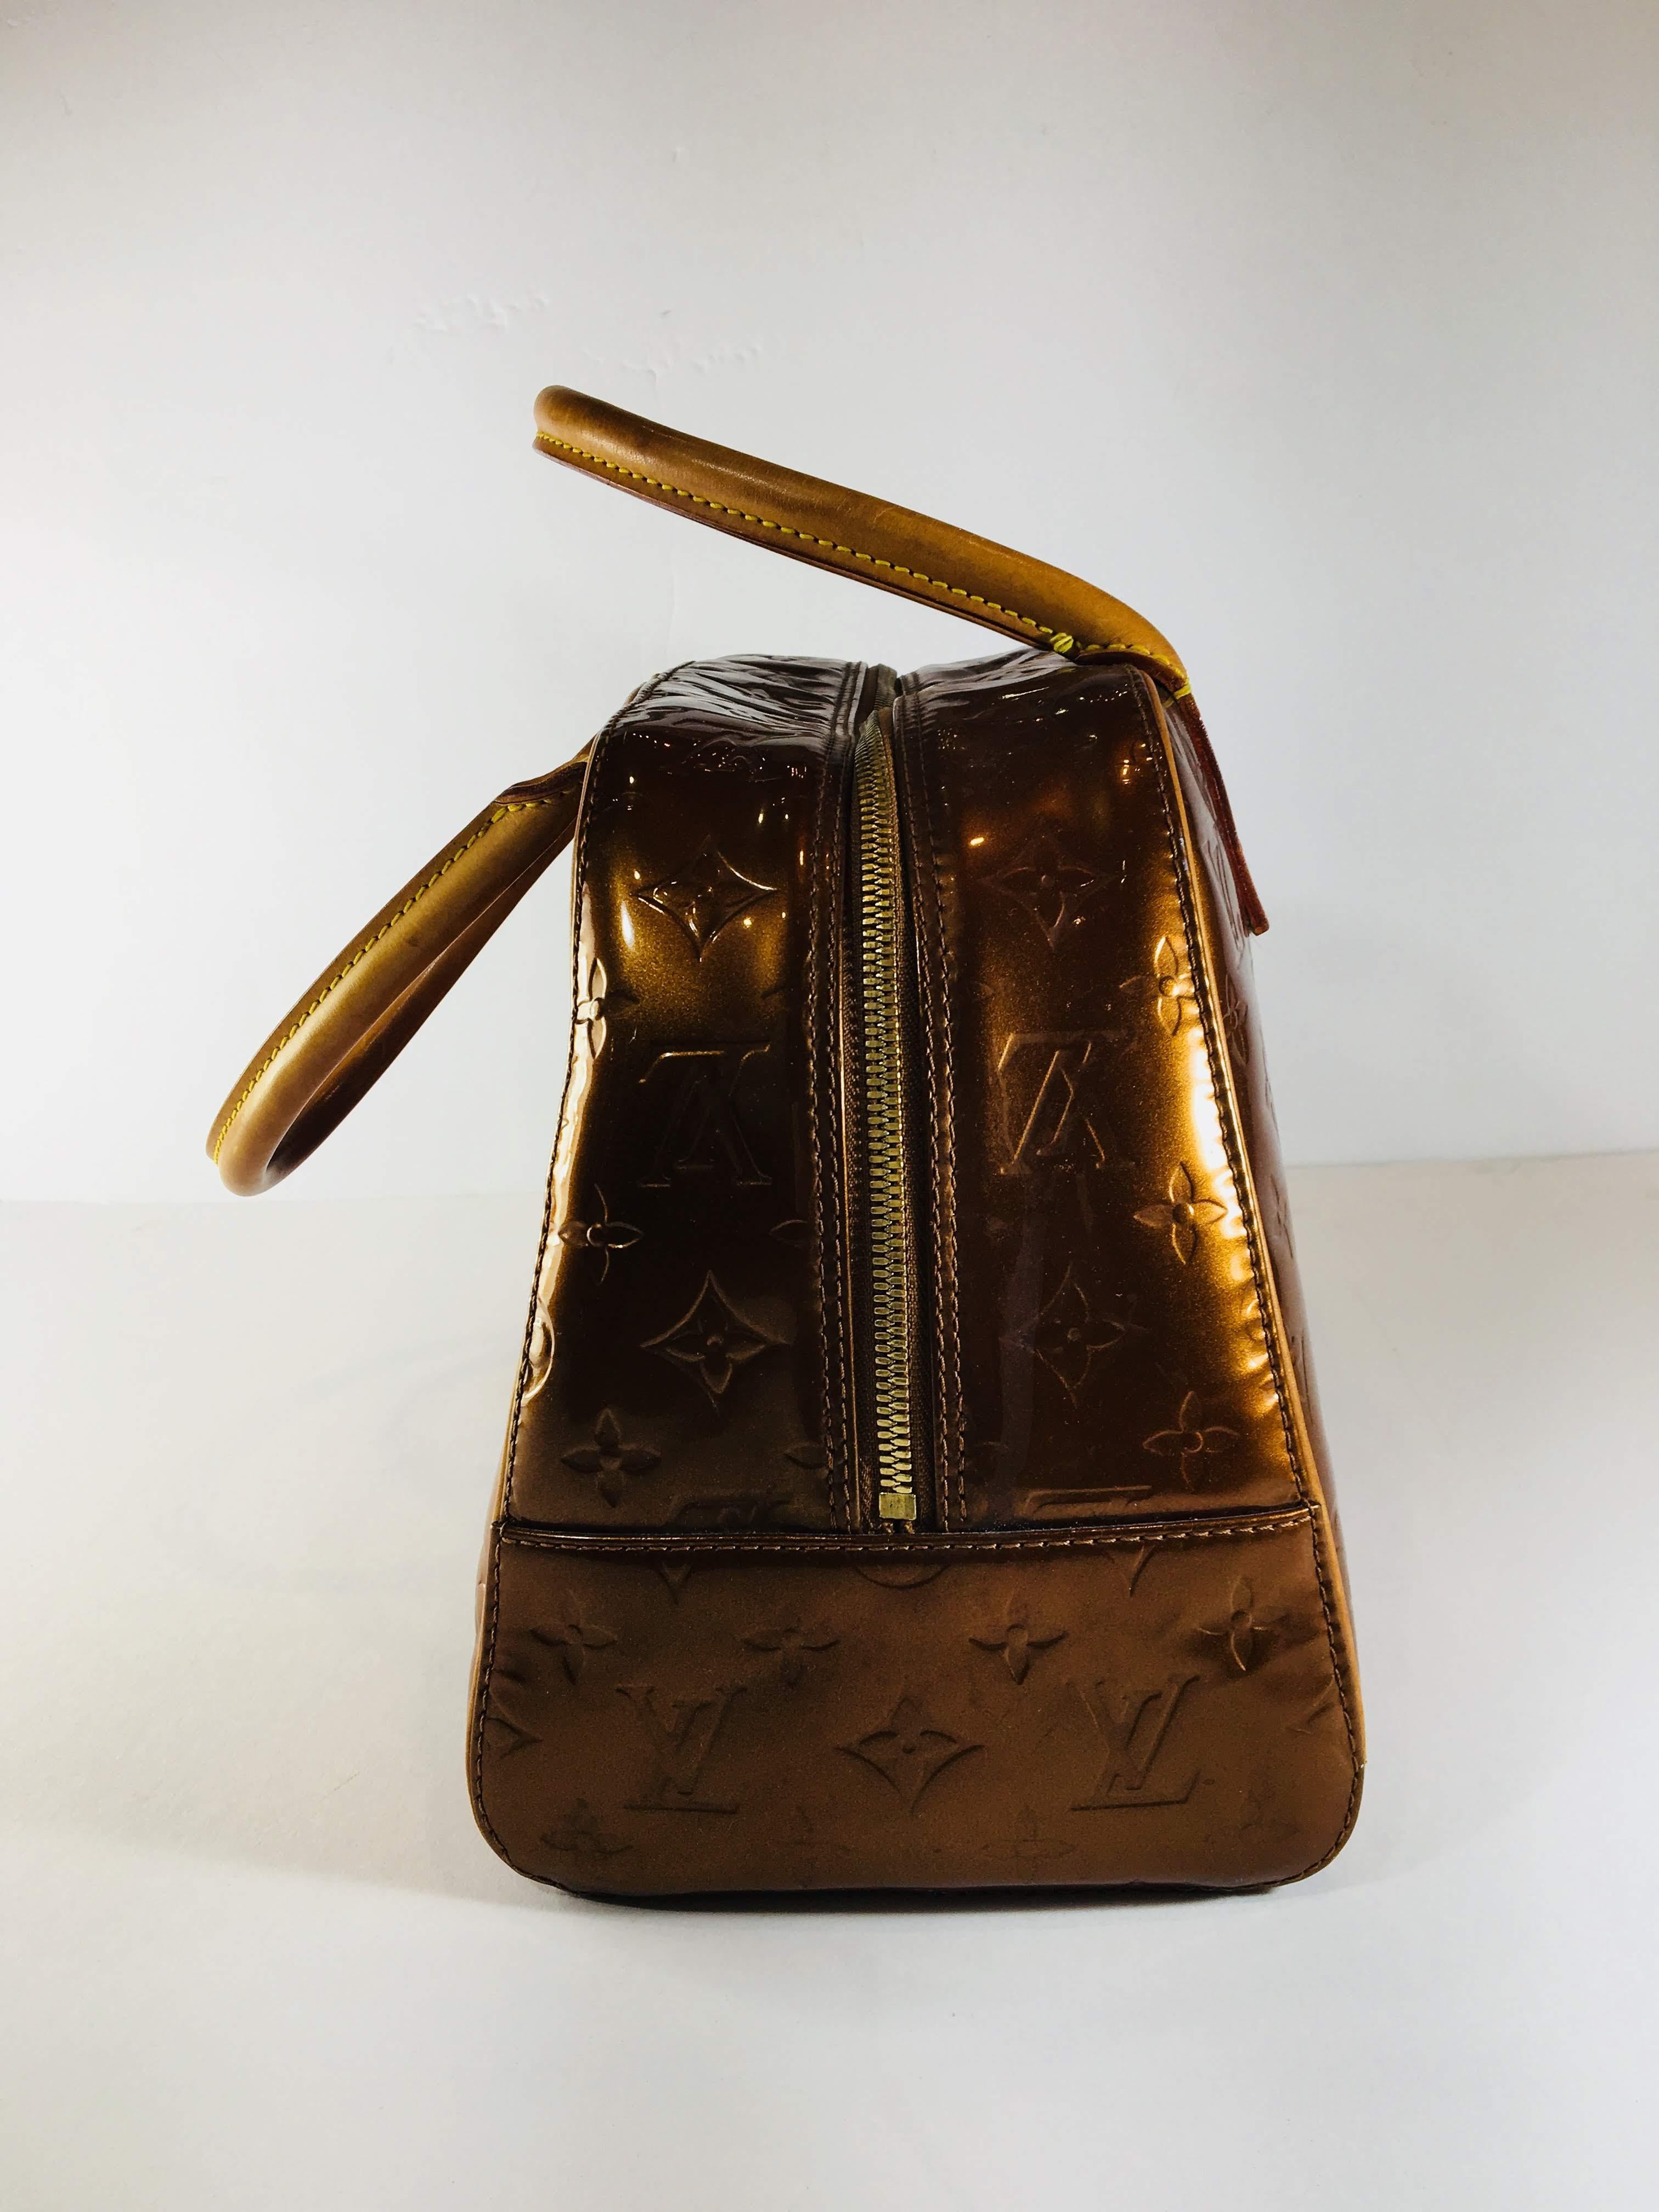 Women's or Men's Louis Vuitton Patent Leather Handle Bag